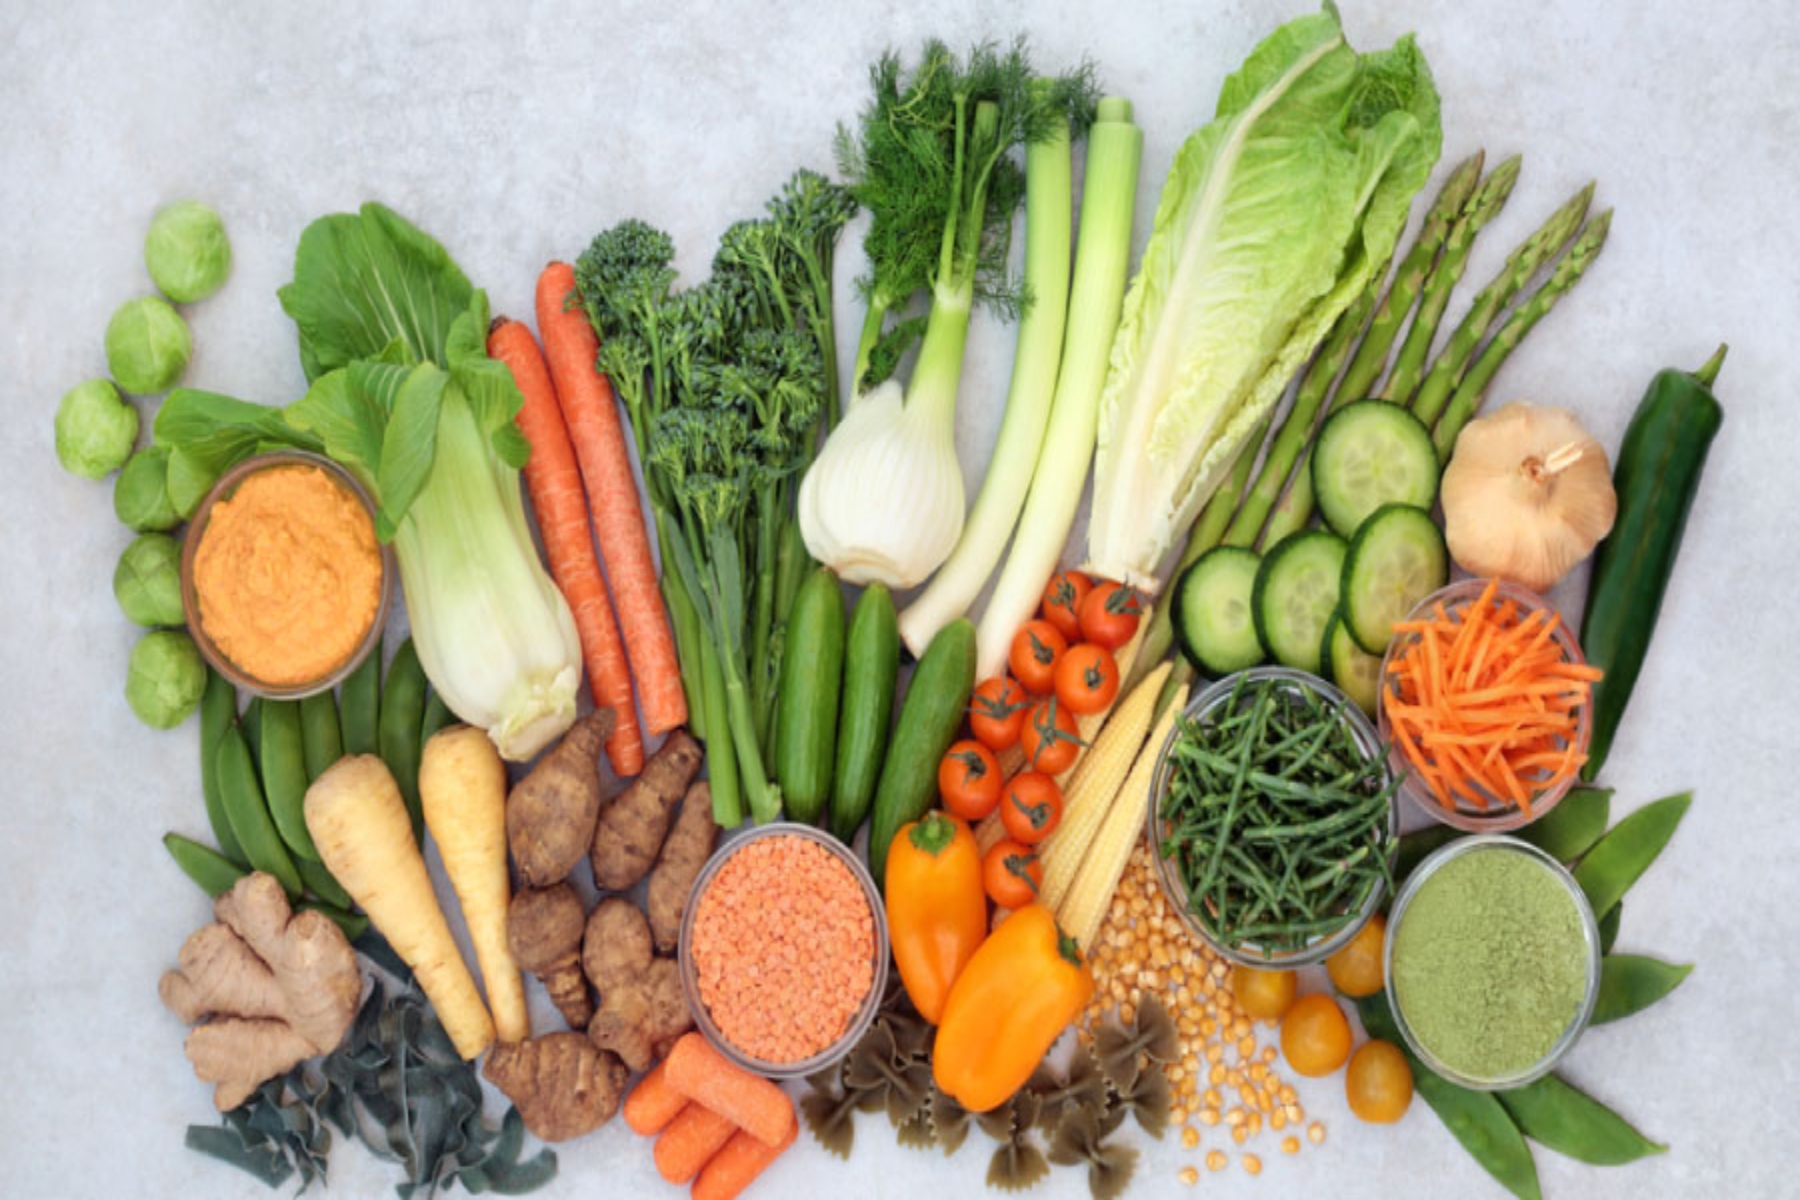 Διατροφή: Ποια λαχανικά έχουν υψηλή περιεκτικότητα σε πρωτεΐνη;